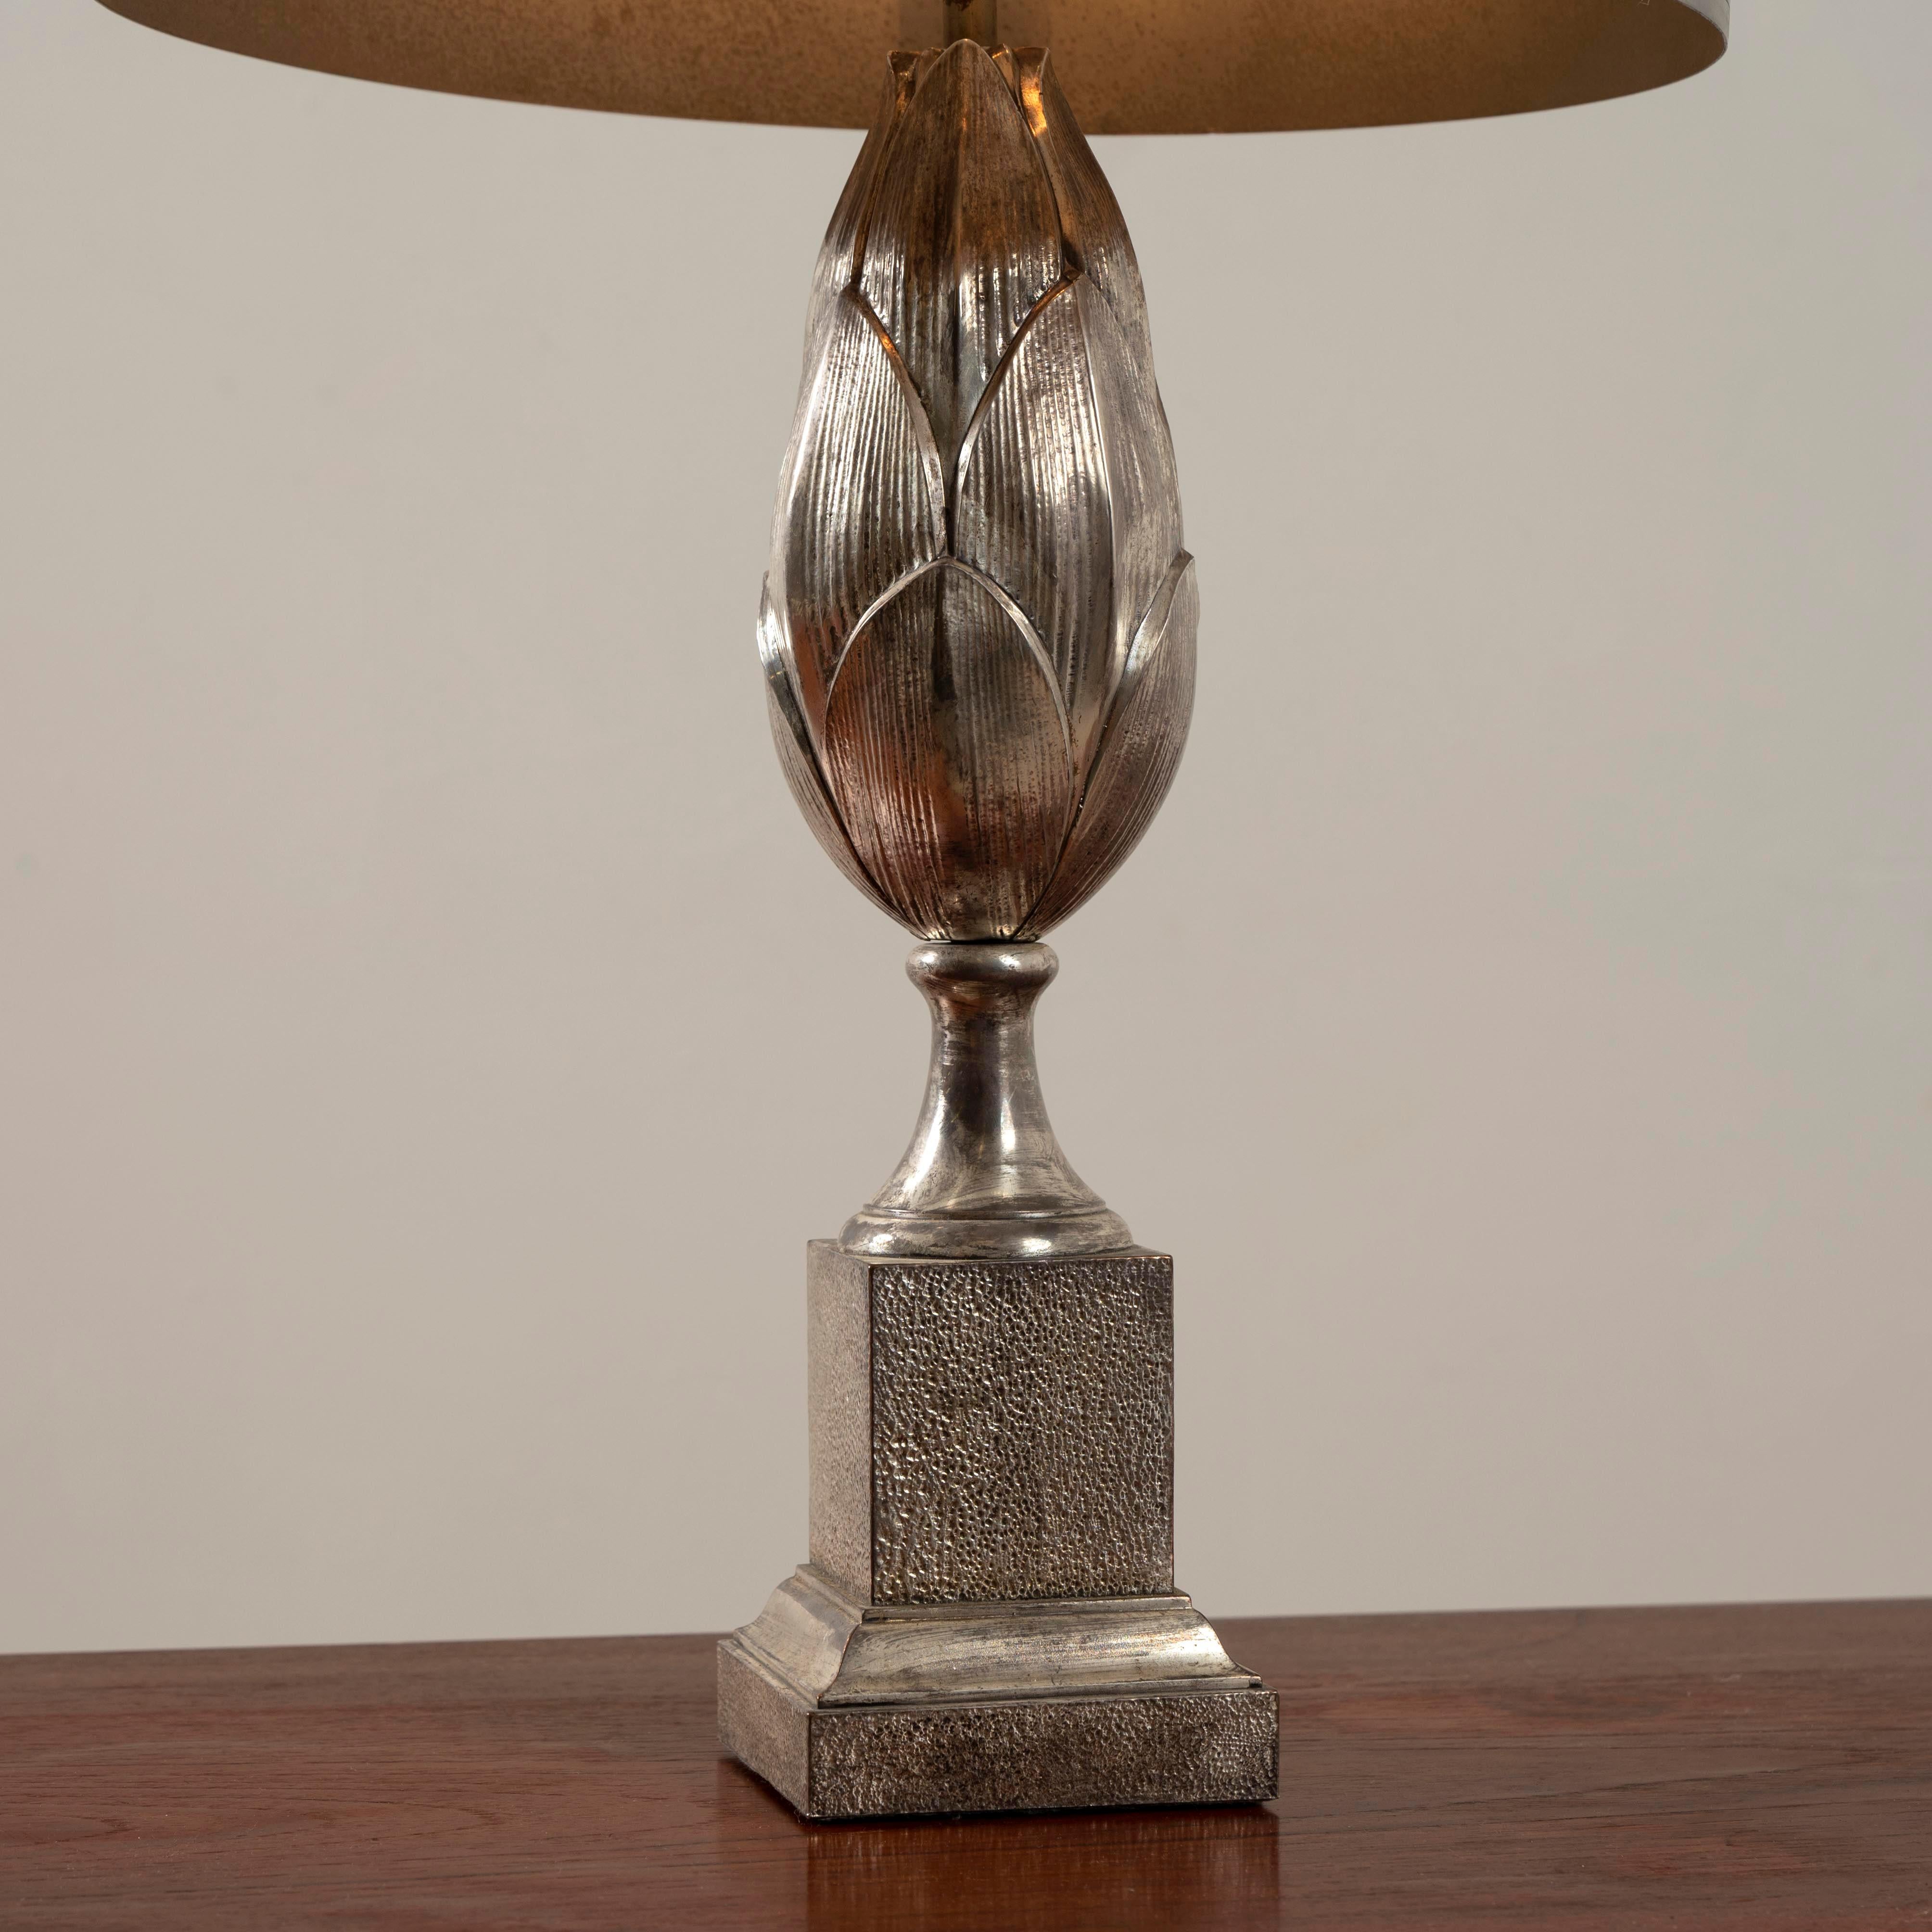 Lampe de la Maison Charles & Fils Paris en bronze nickelé, signé.

 Höhe : 68 cm Durchmesser : 35 cm